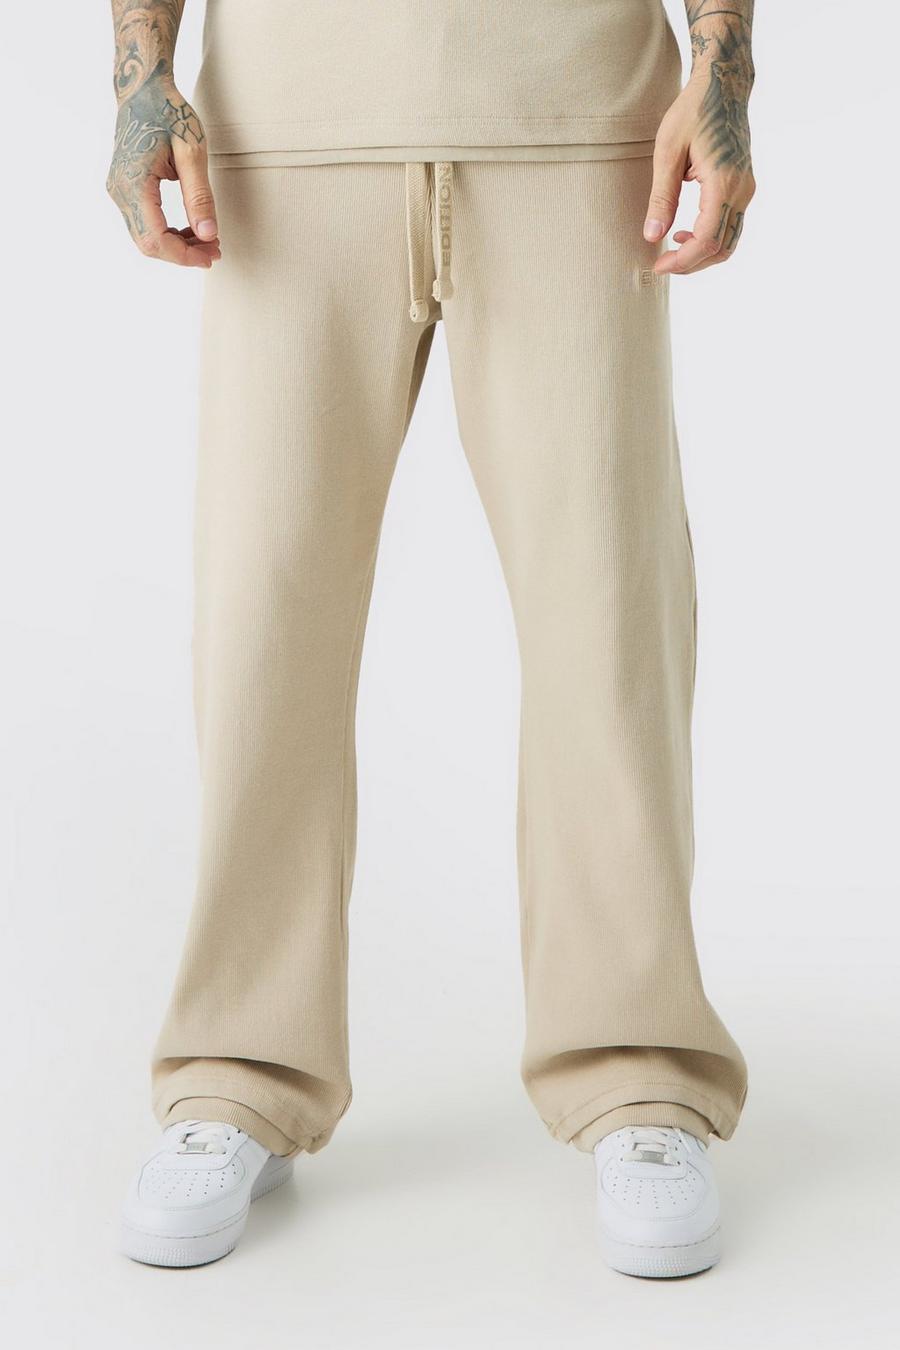 Pantaloni tuta Tall EDITION pesanti dritti a coste con spacco sul fondo, Stone image number 1